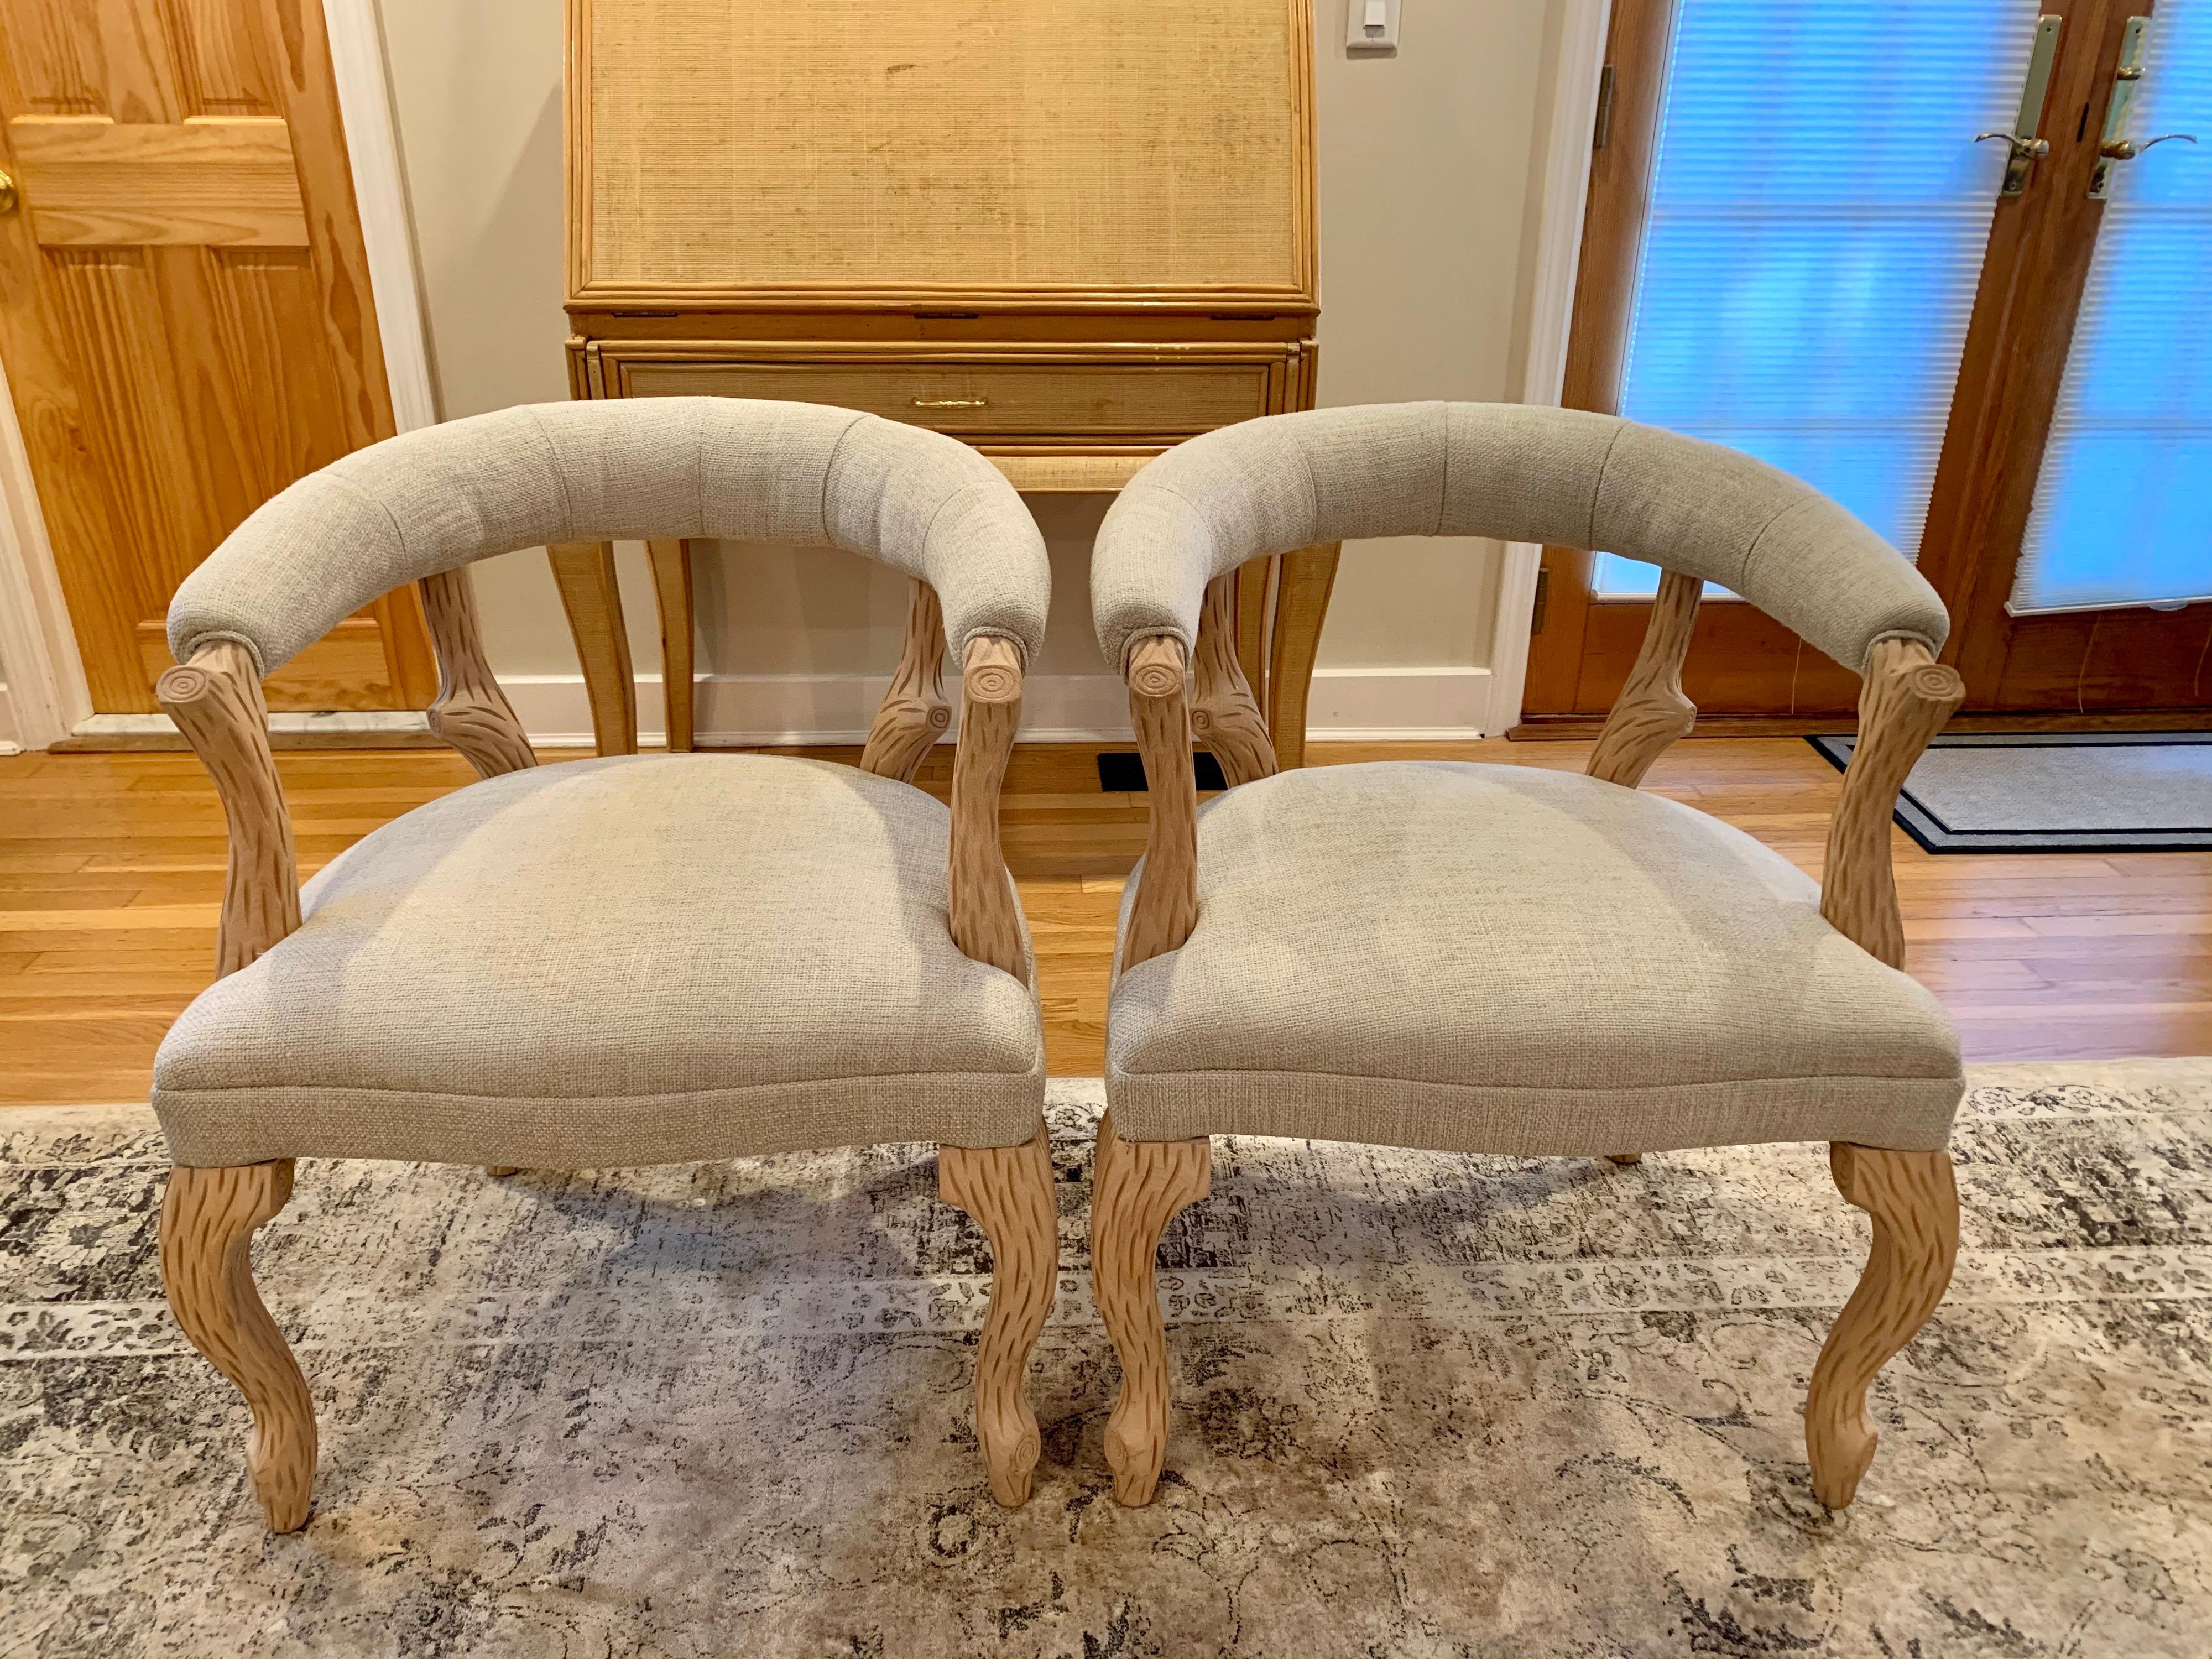 Dies ist ein hübsches Paar eleganter Faux-Bois-Stühle mit abgerundeter Rückenlehne im Stil von Nina Ditzel. Das Holz wird abgebeizt und gebleicht, um seine schöne natürliche Farbe zu erhalten - sehr organisch.